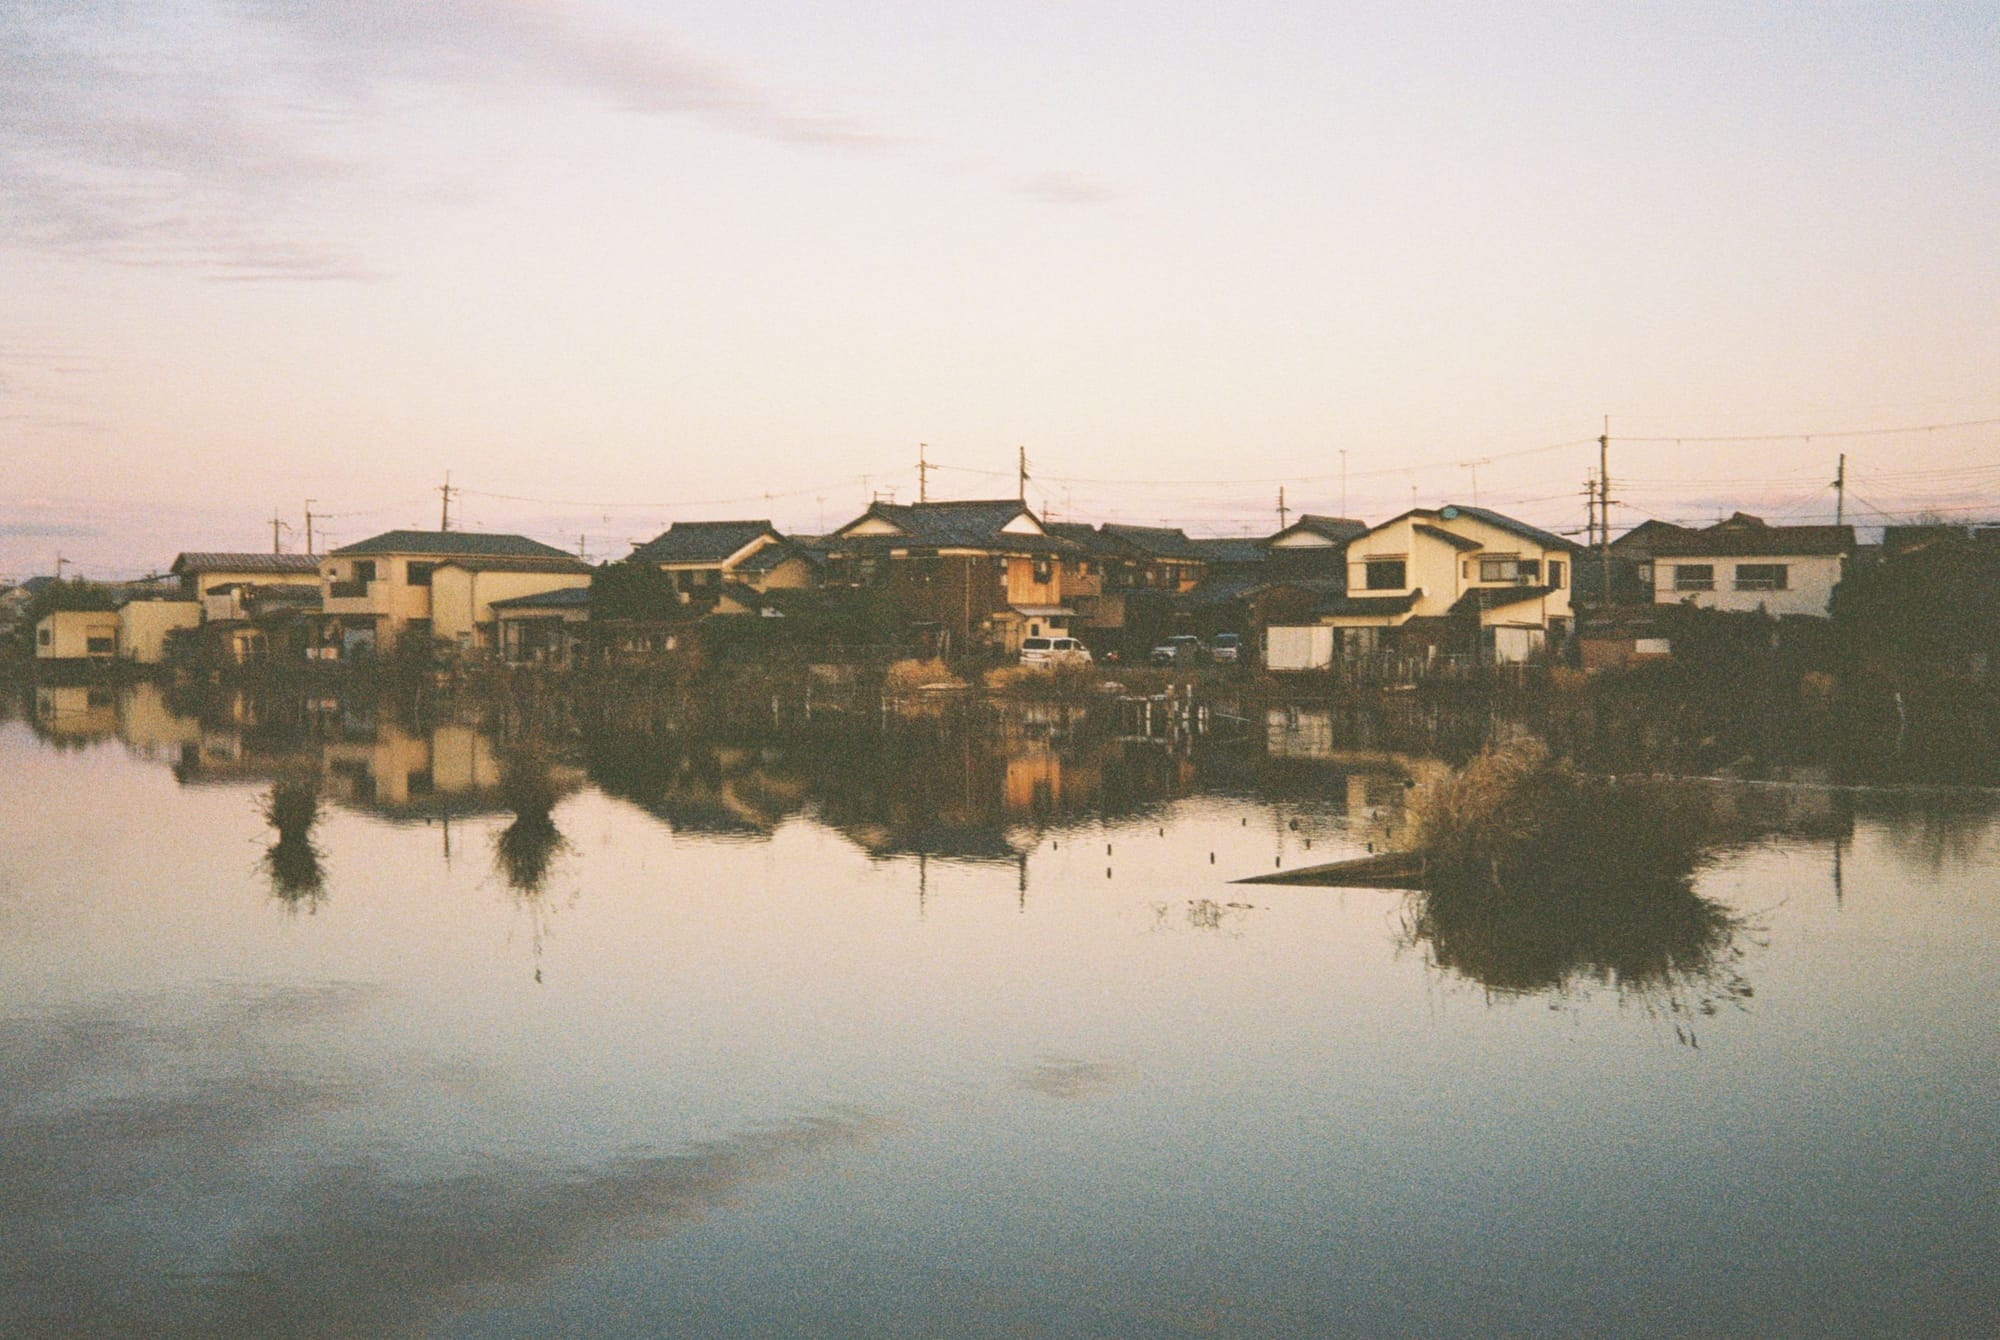 Japan Diaries - Lake Biwa, Karuizawa and Nara